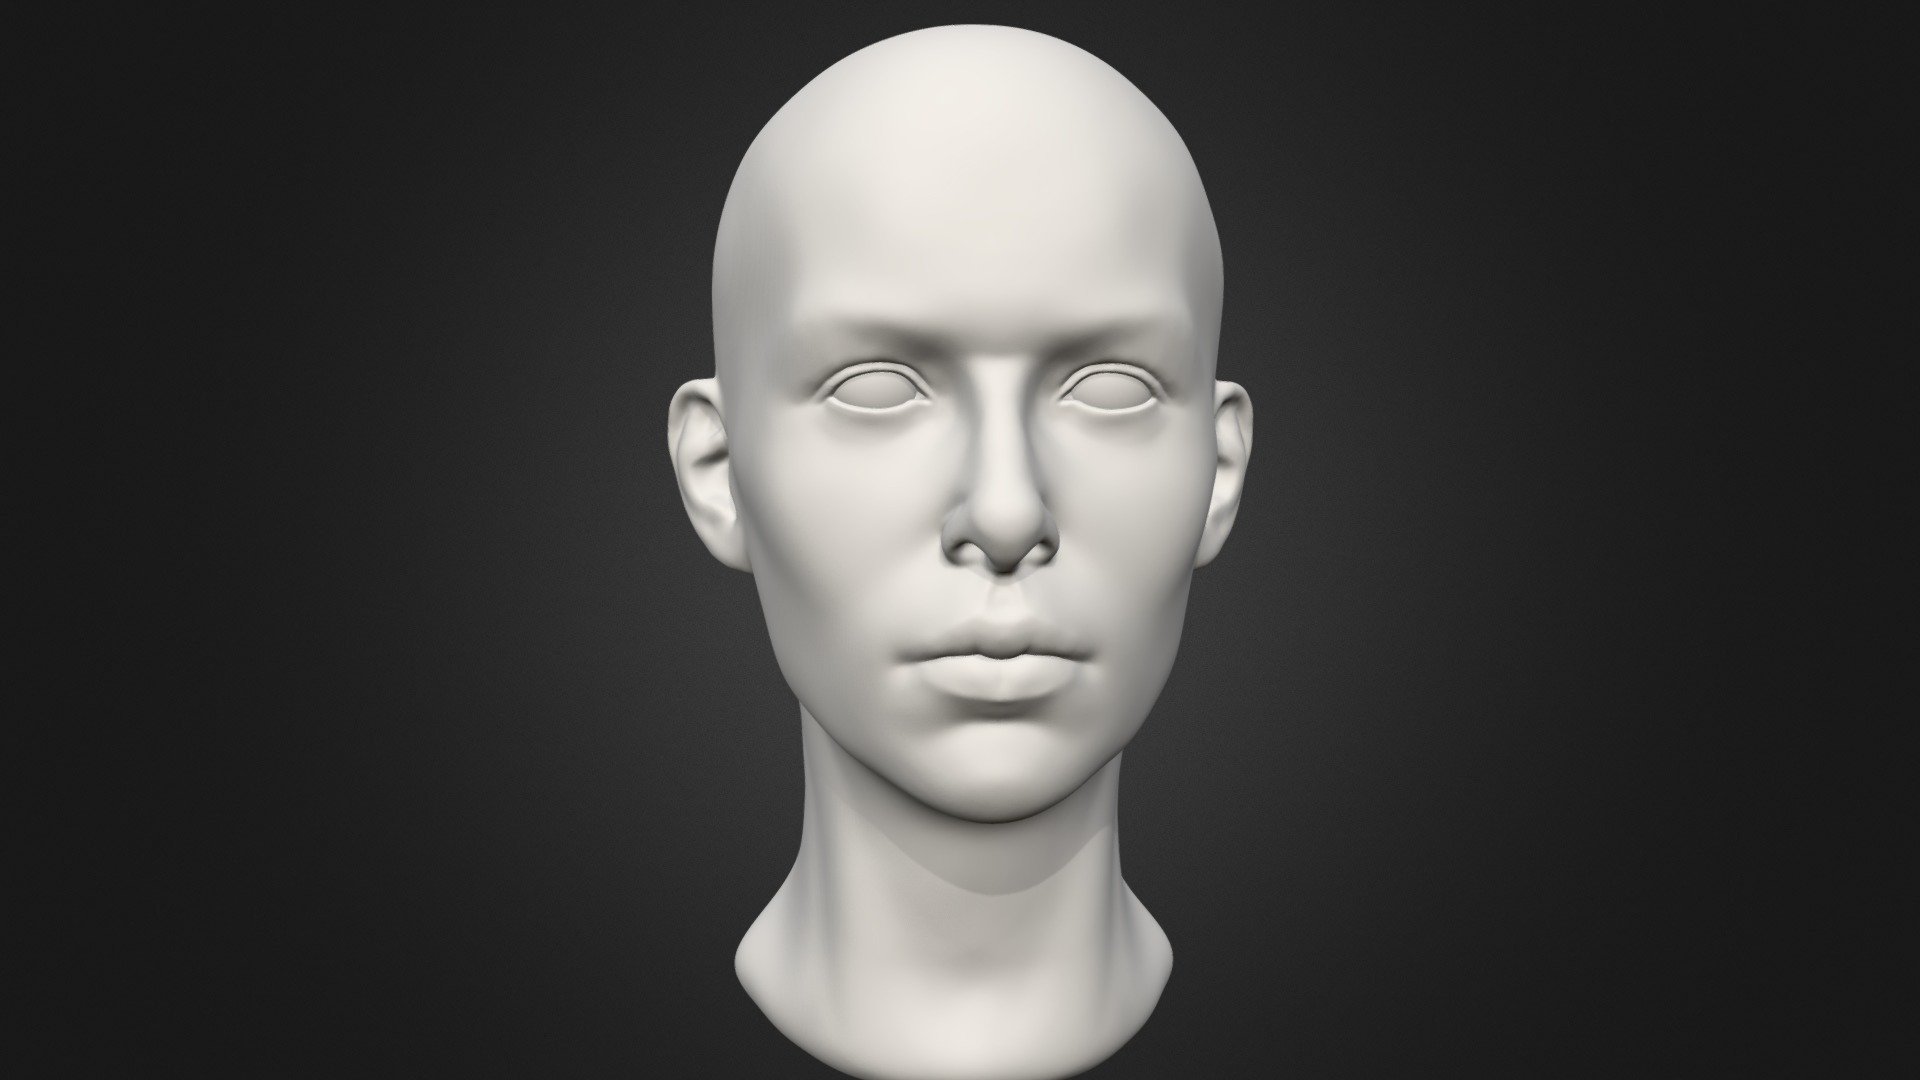 Female Head 2 3d Model By Cgspektor 1f9c3ea Sketchfab